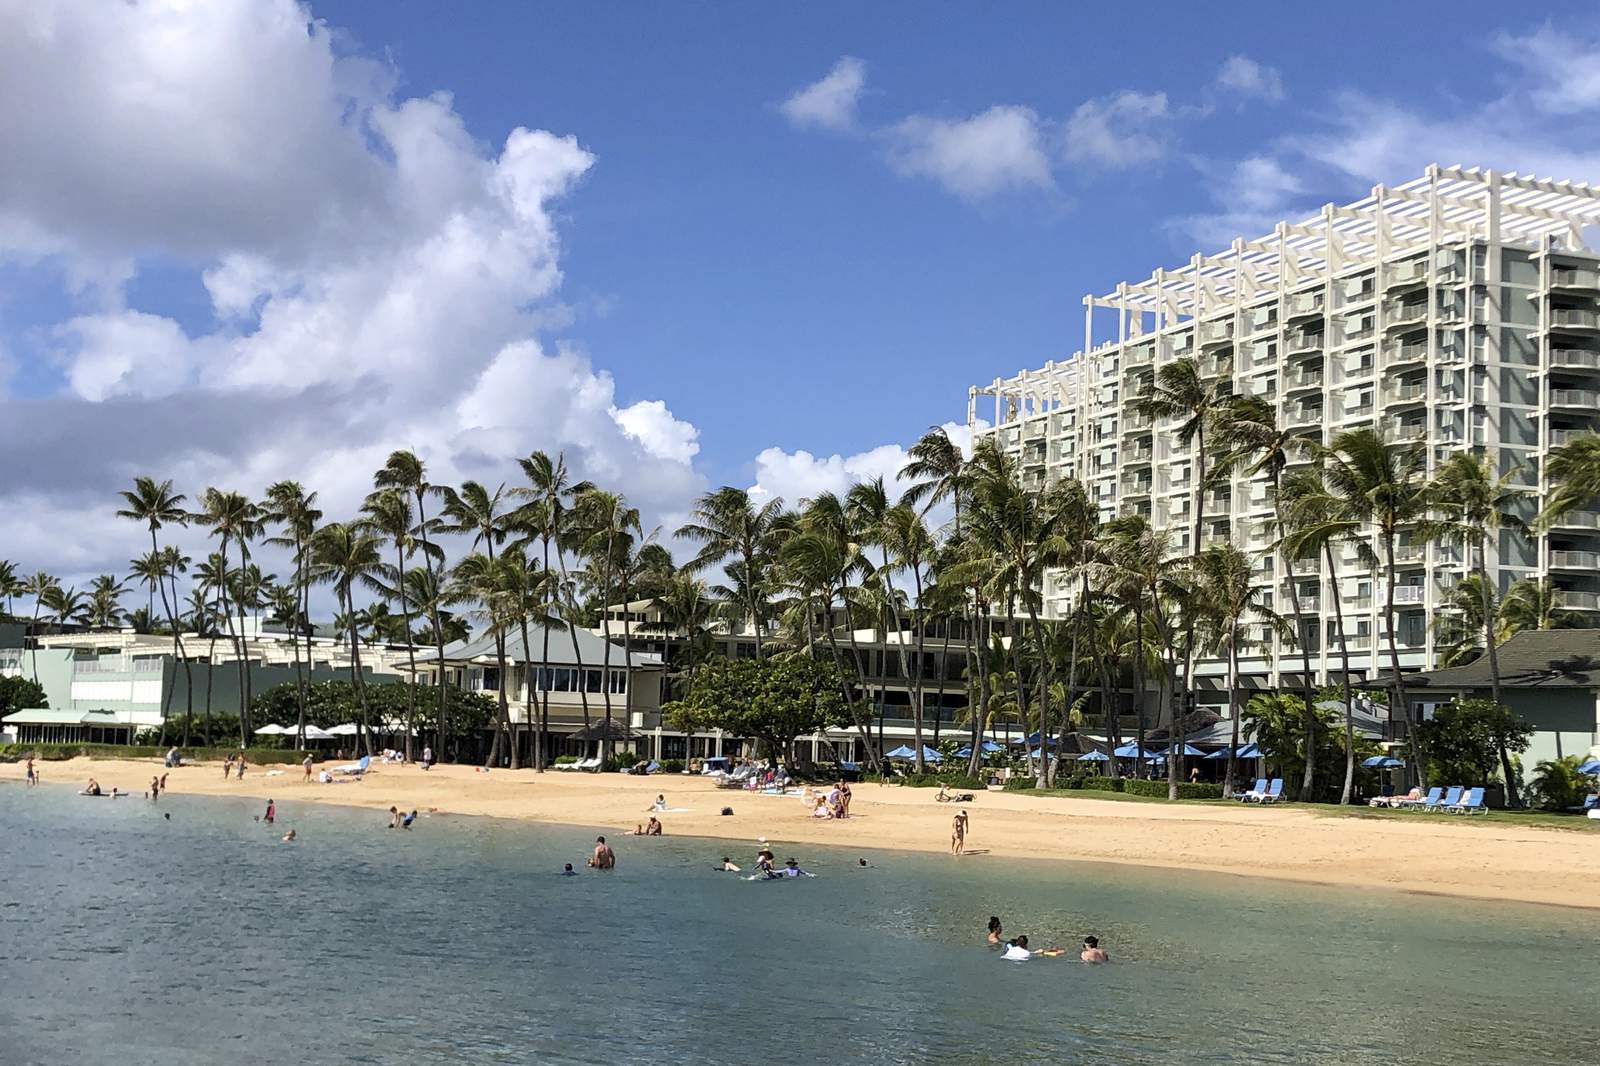 Sailor who shot, killed himself at Hawaii resort identified